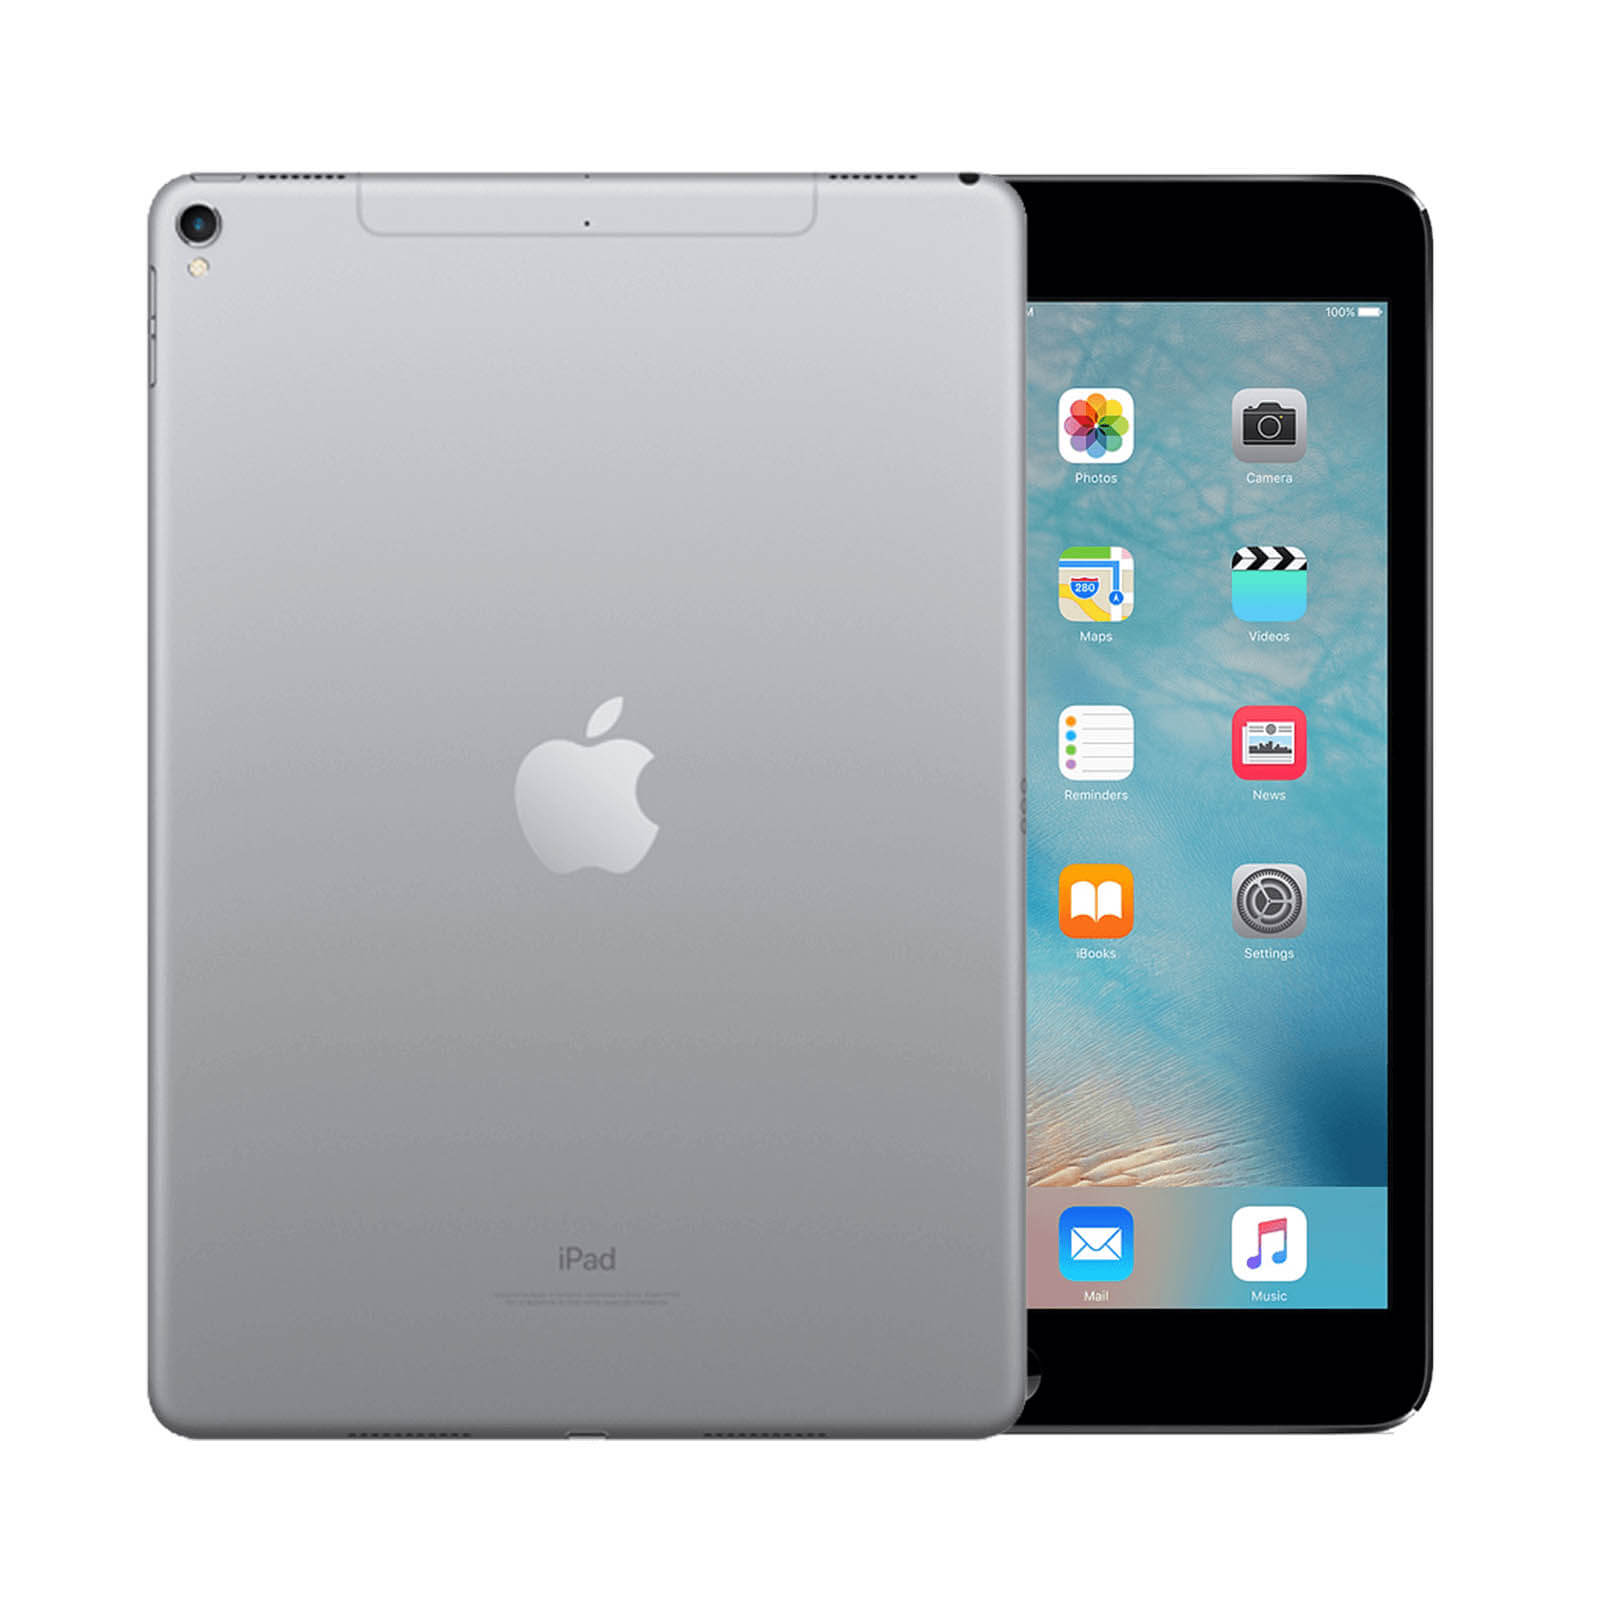 Apple iPad 7 128GB WiFi Space Grey Good 128GB Space Grey Good